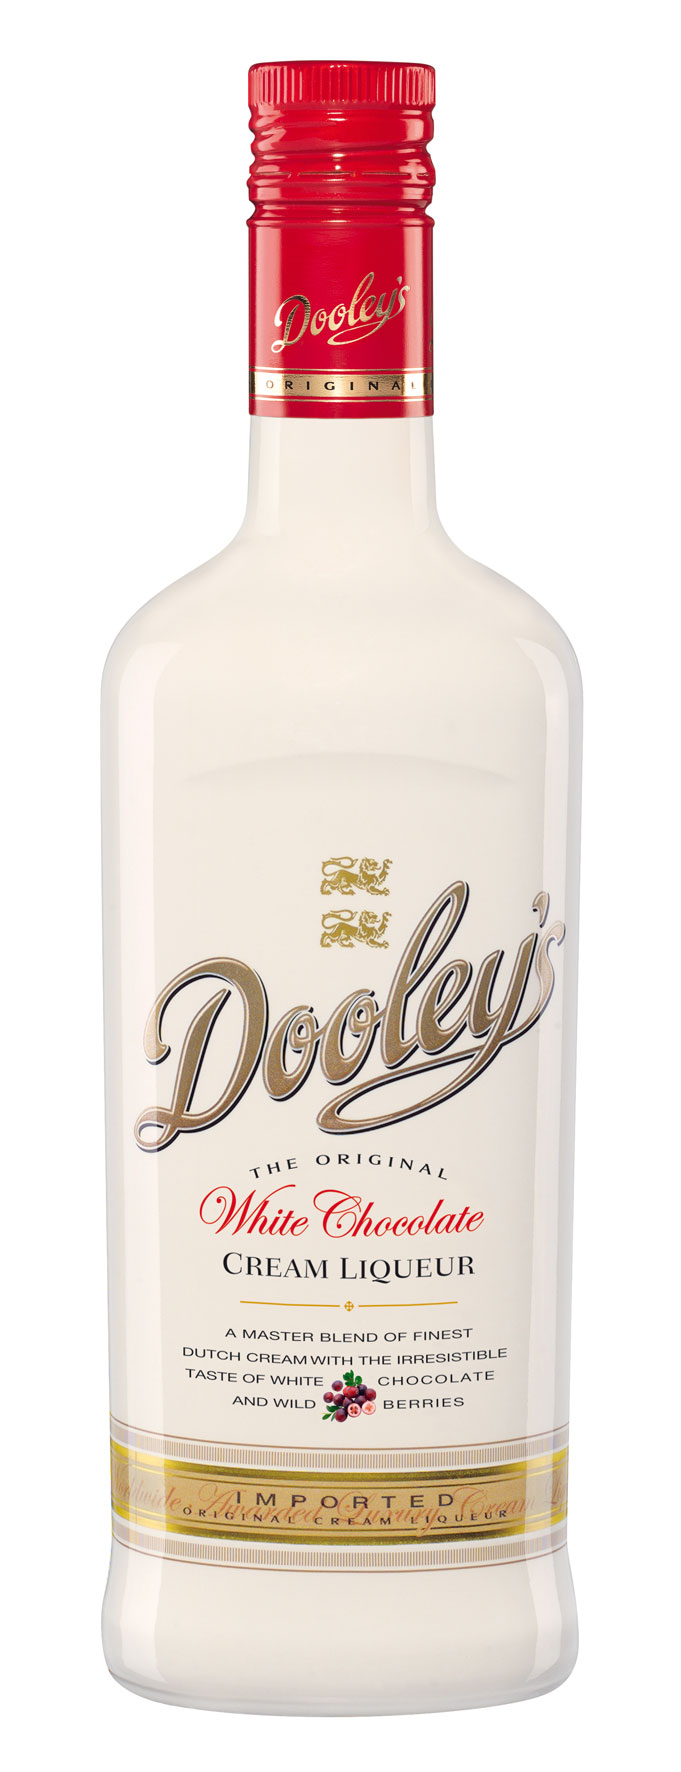 Dooley's Cream Liqueur - White Chocolate - 0,7l 15%vol.